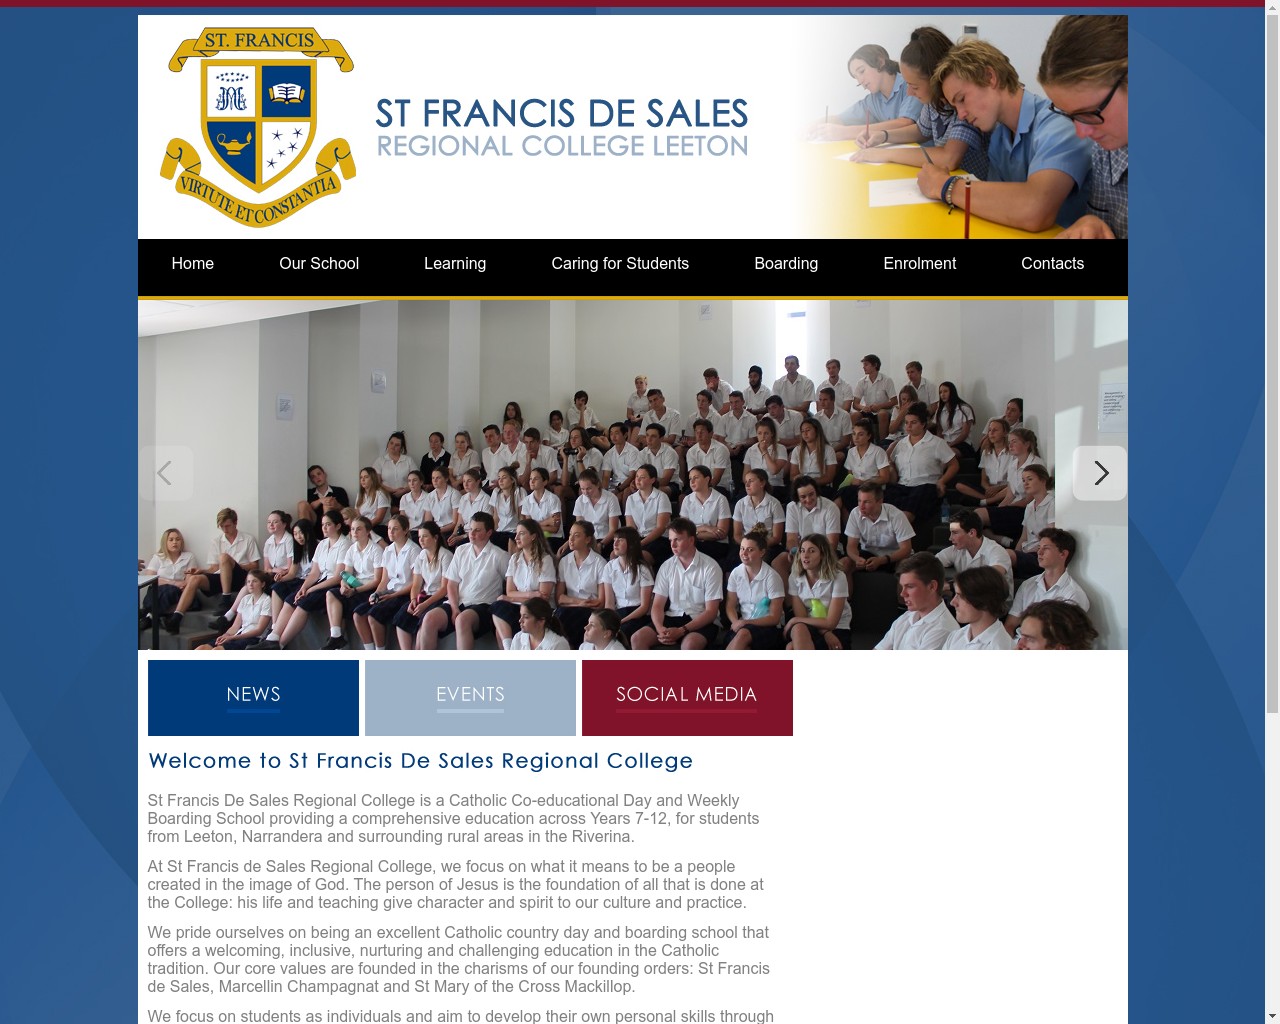 St Francis de Sales Regional College